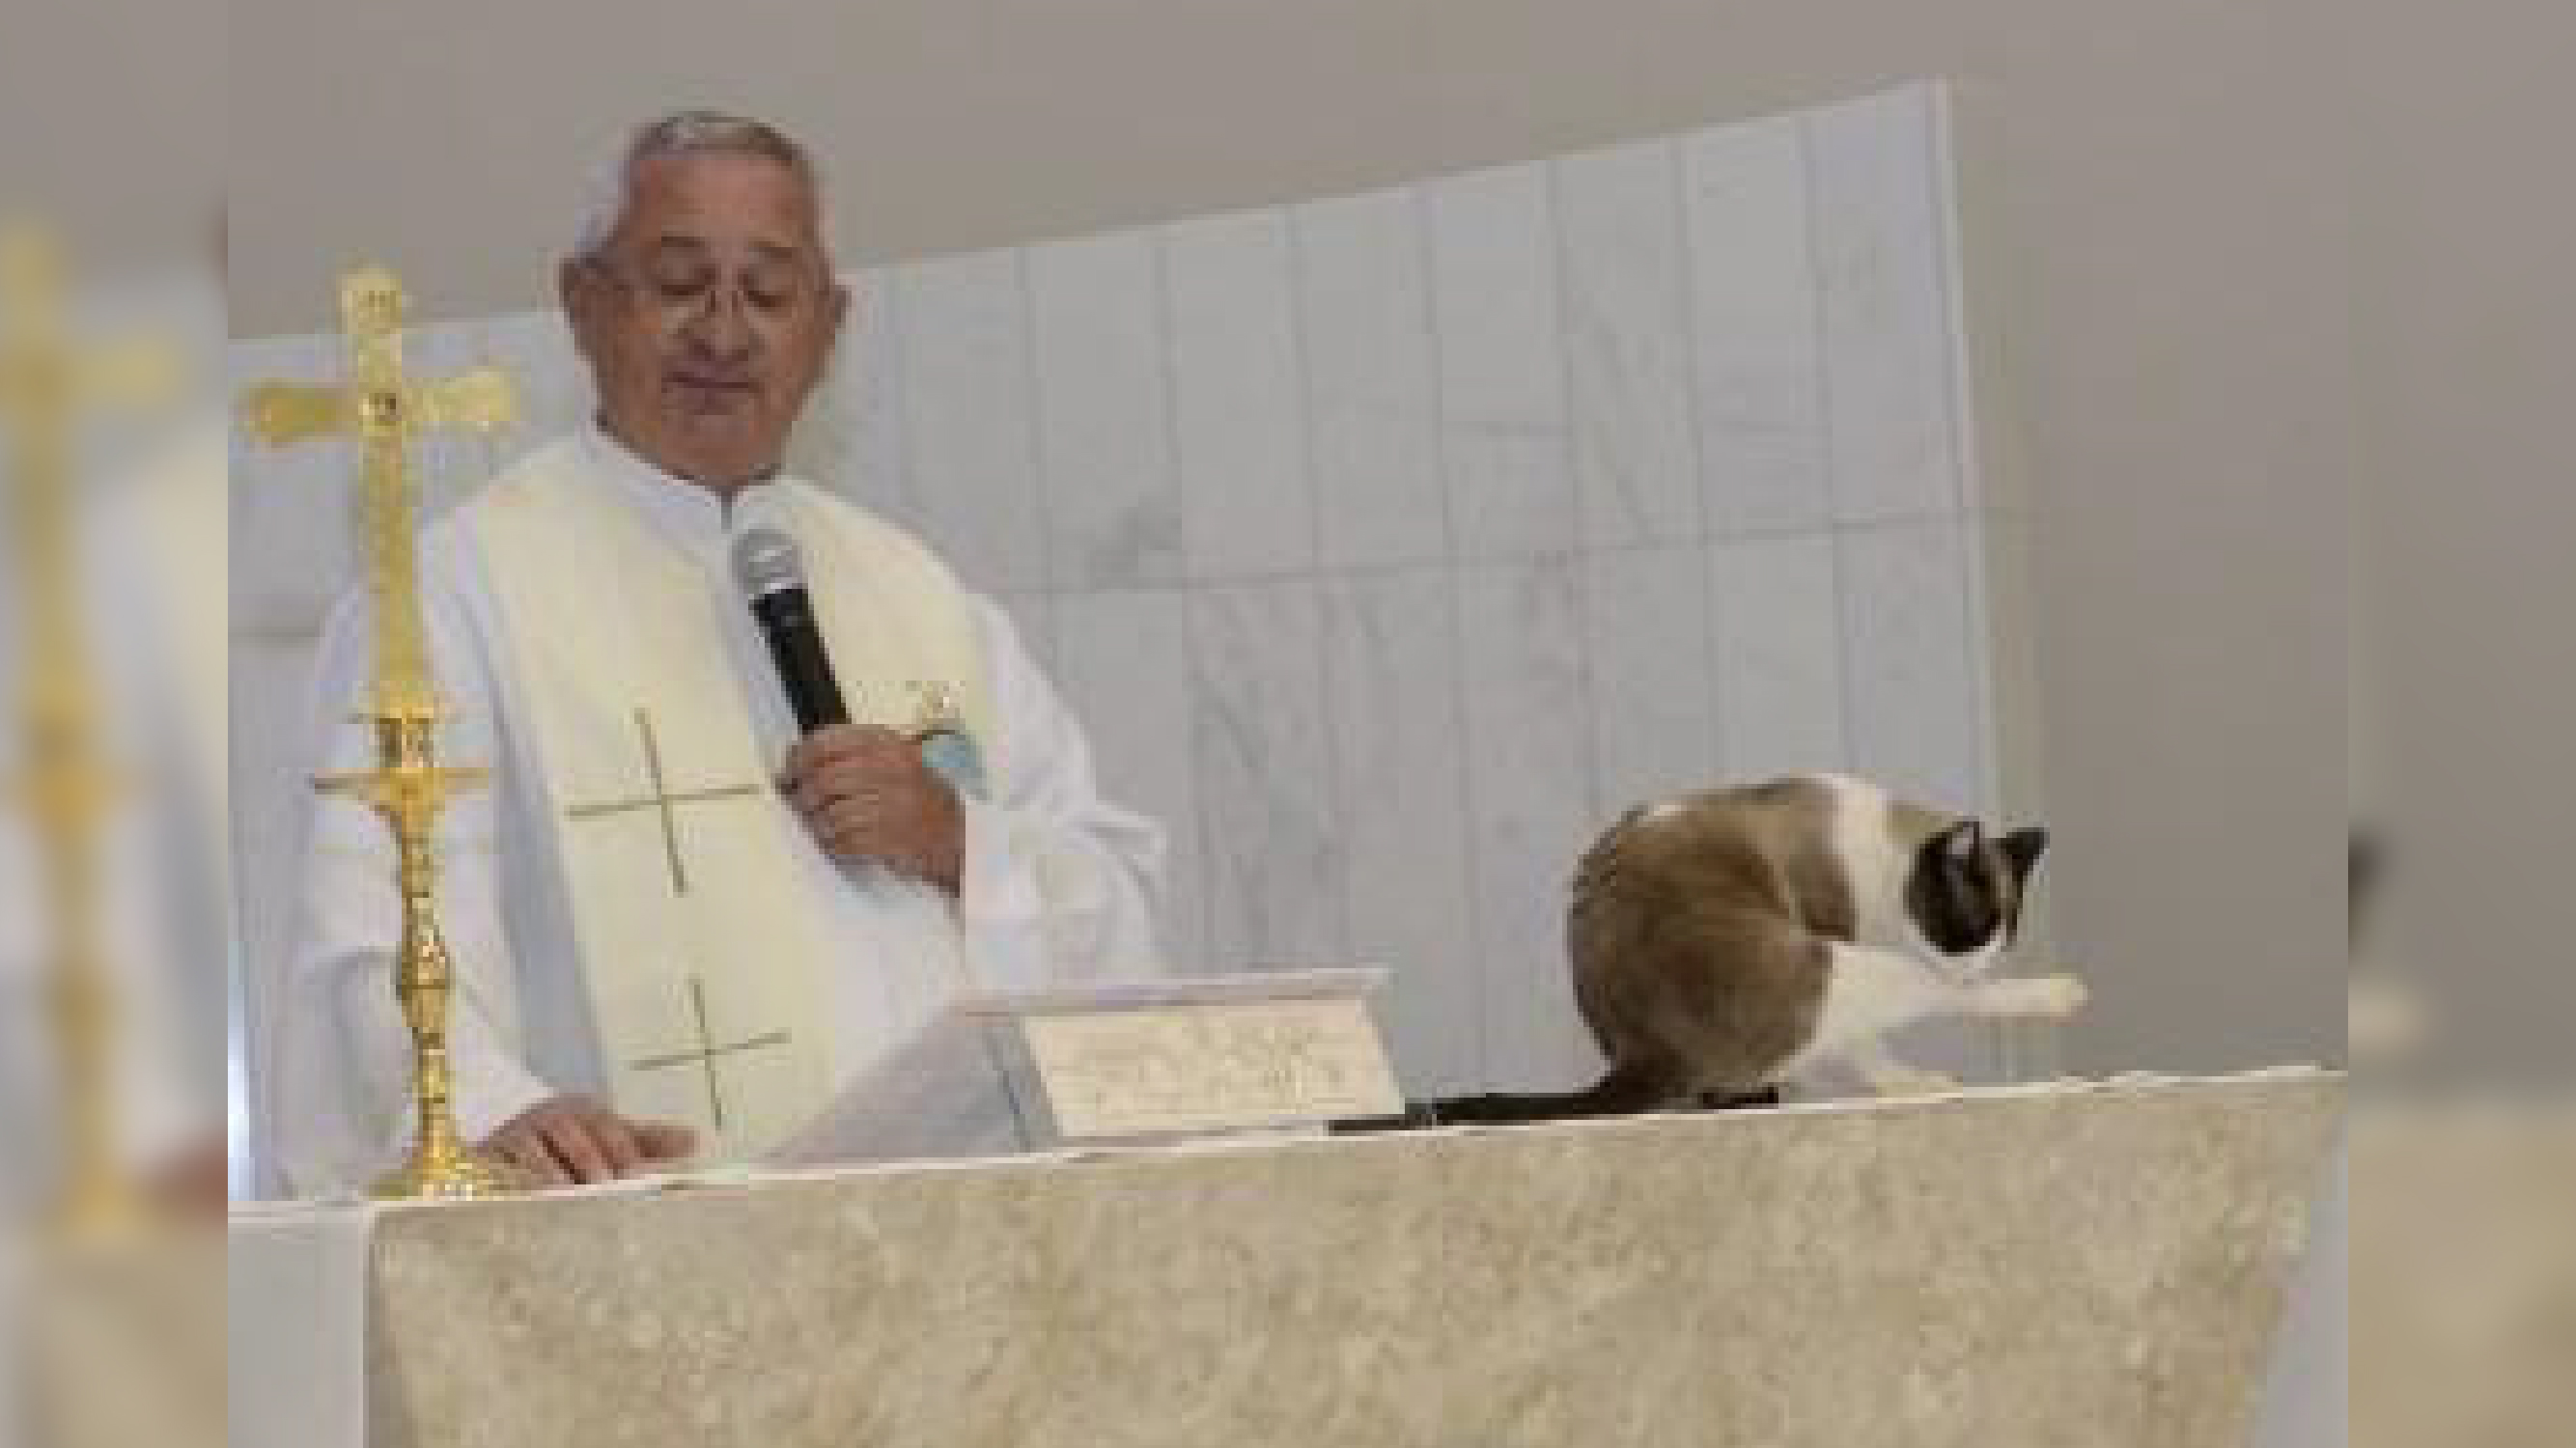 Gato decide participar de batizado e fiéis aprovam atitude de padre/ Imagem: reprodução internet